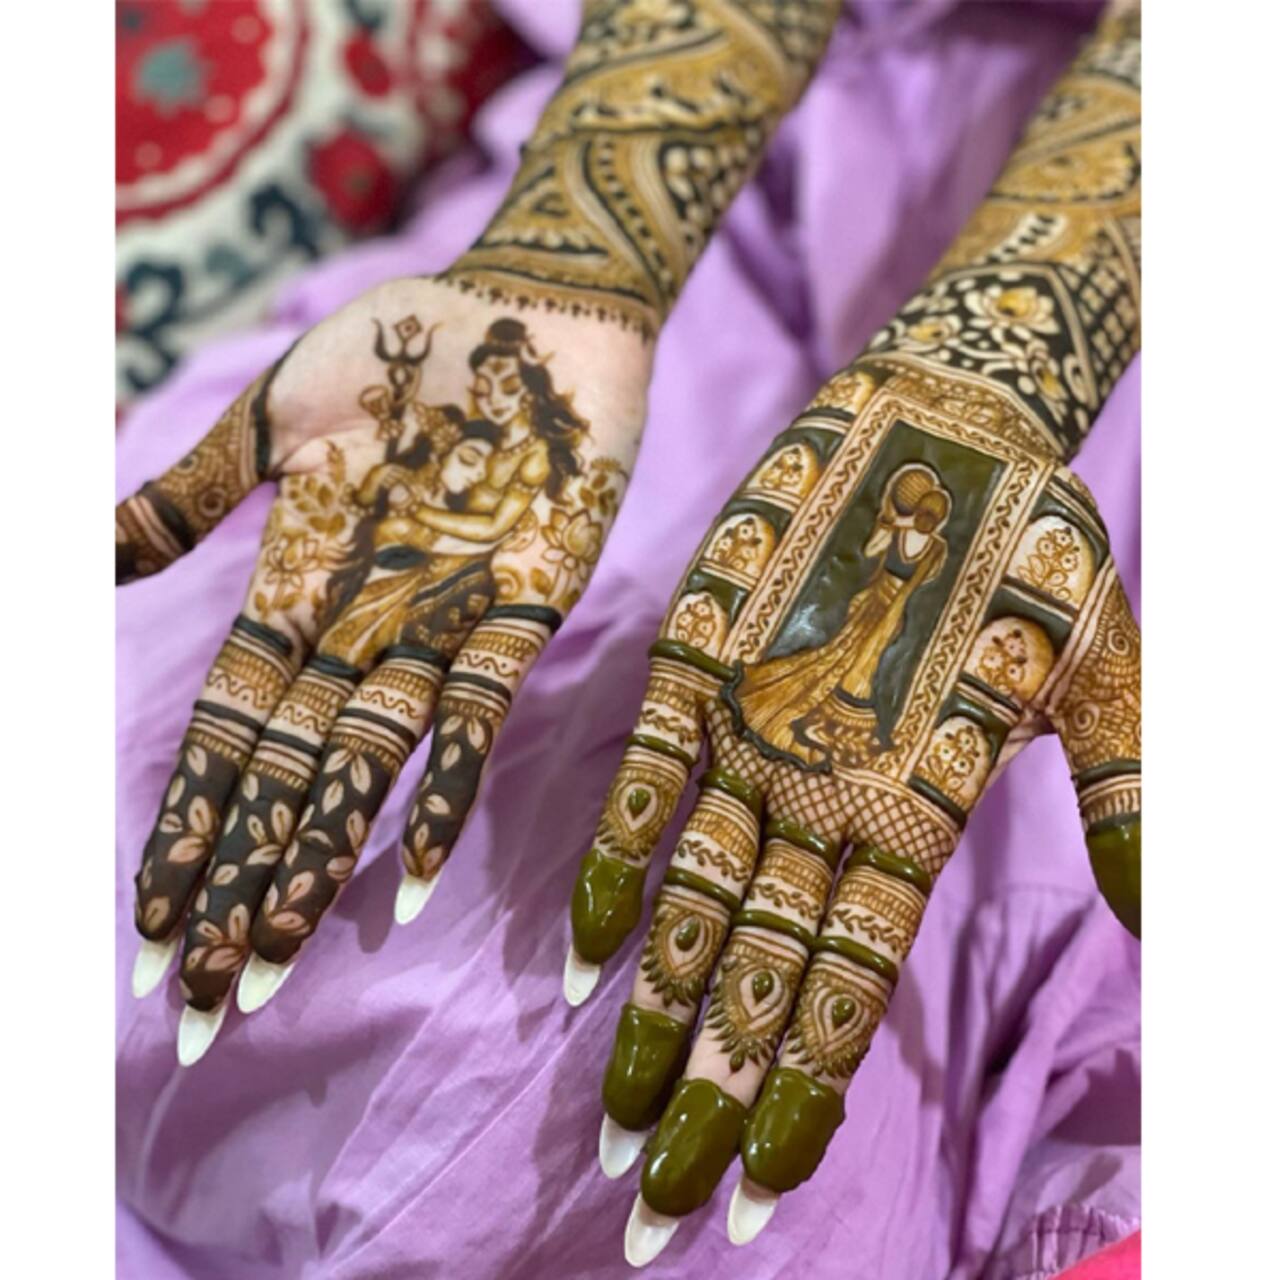 मौनी रॉय (Mouni Roy) के हाथ पर दिखी शिव पार्वती की शानदार छवि